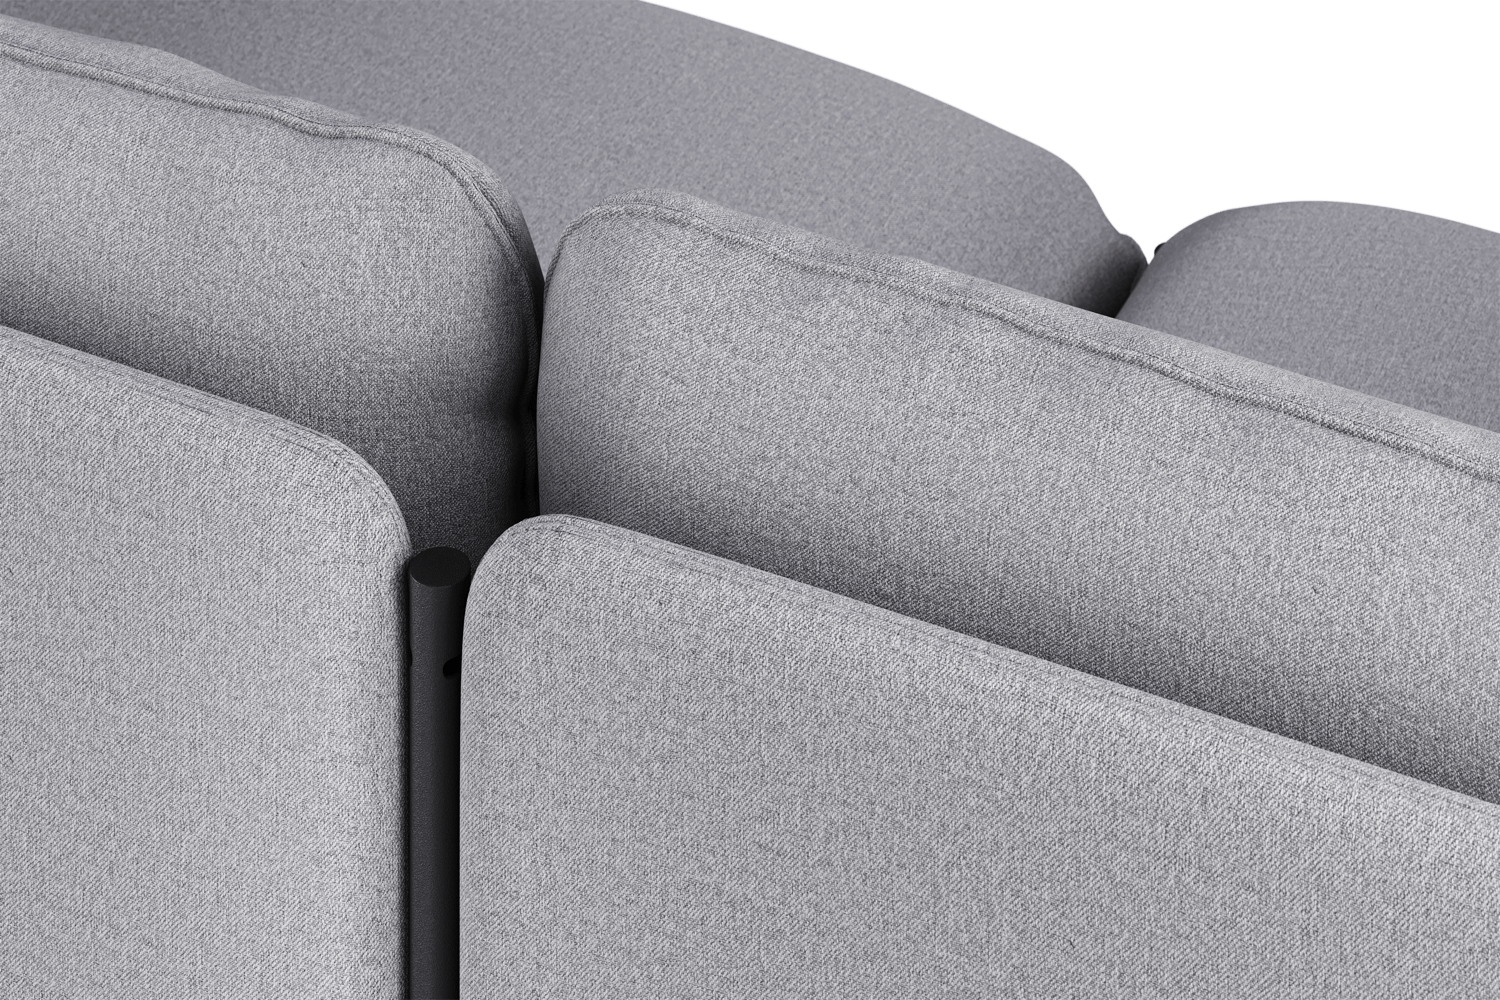 Toom Modular Sofa 4-Sitzer Konfiguration 2b in Pale Grey  präsentiert im Onlineshop von KAQTU Design AG. Ecksofa links ist von Noo.ma